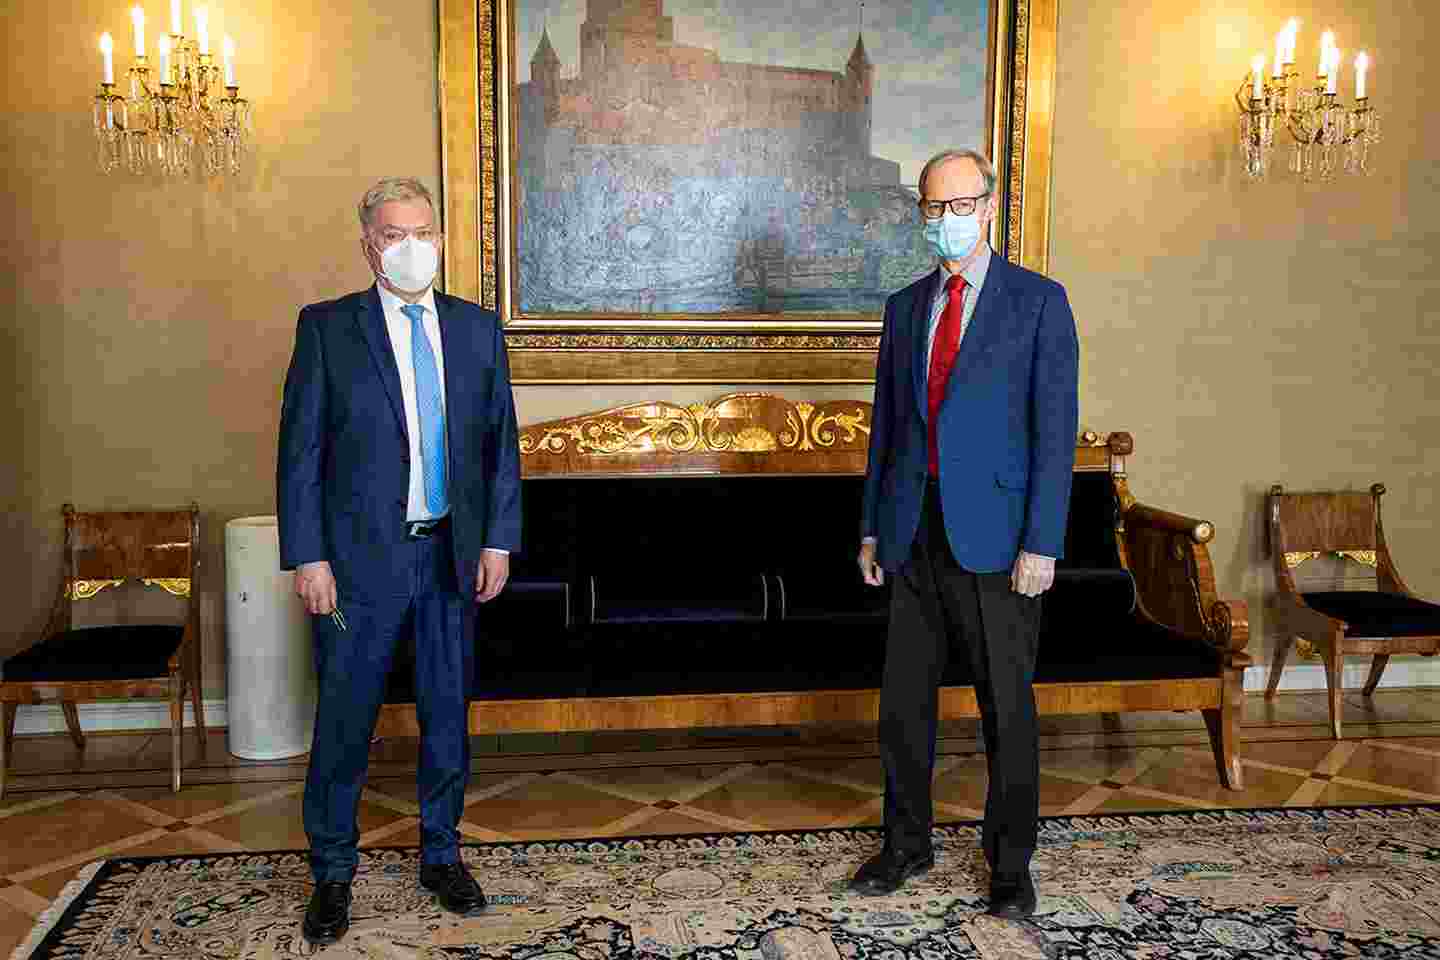 Sauli Niinistö ja Pertti Torstila kasvoillaan maskit seisovat taululla ja kristallikruunuilla sisustetussa huoneessa.